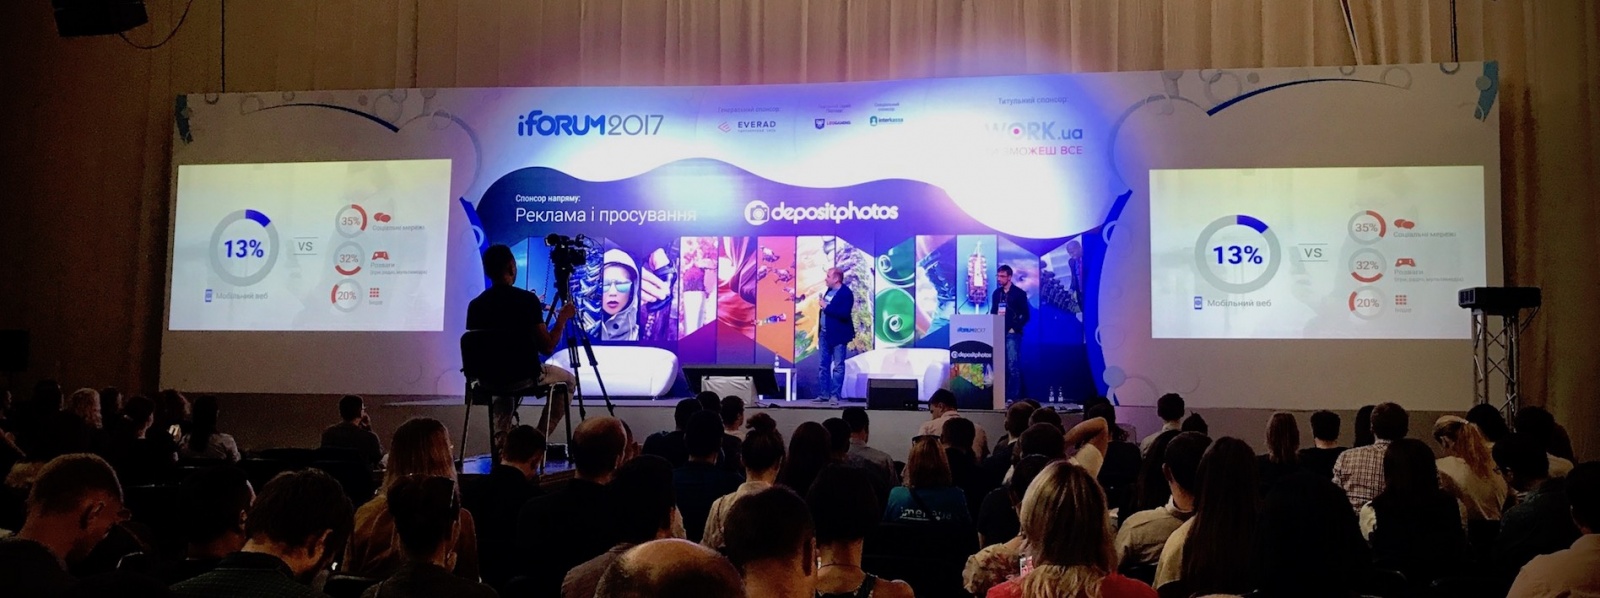 Большое ИТ-коммьюнити на конференции iForum 2017 (Киев) - 8